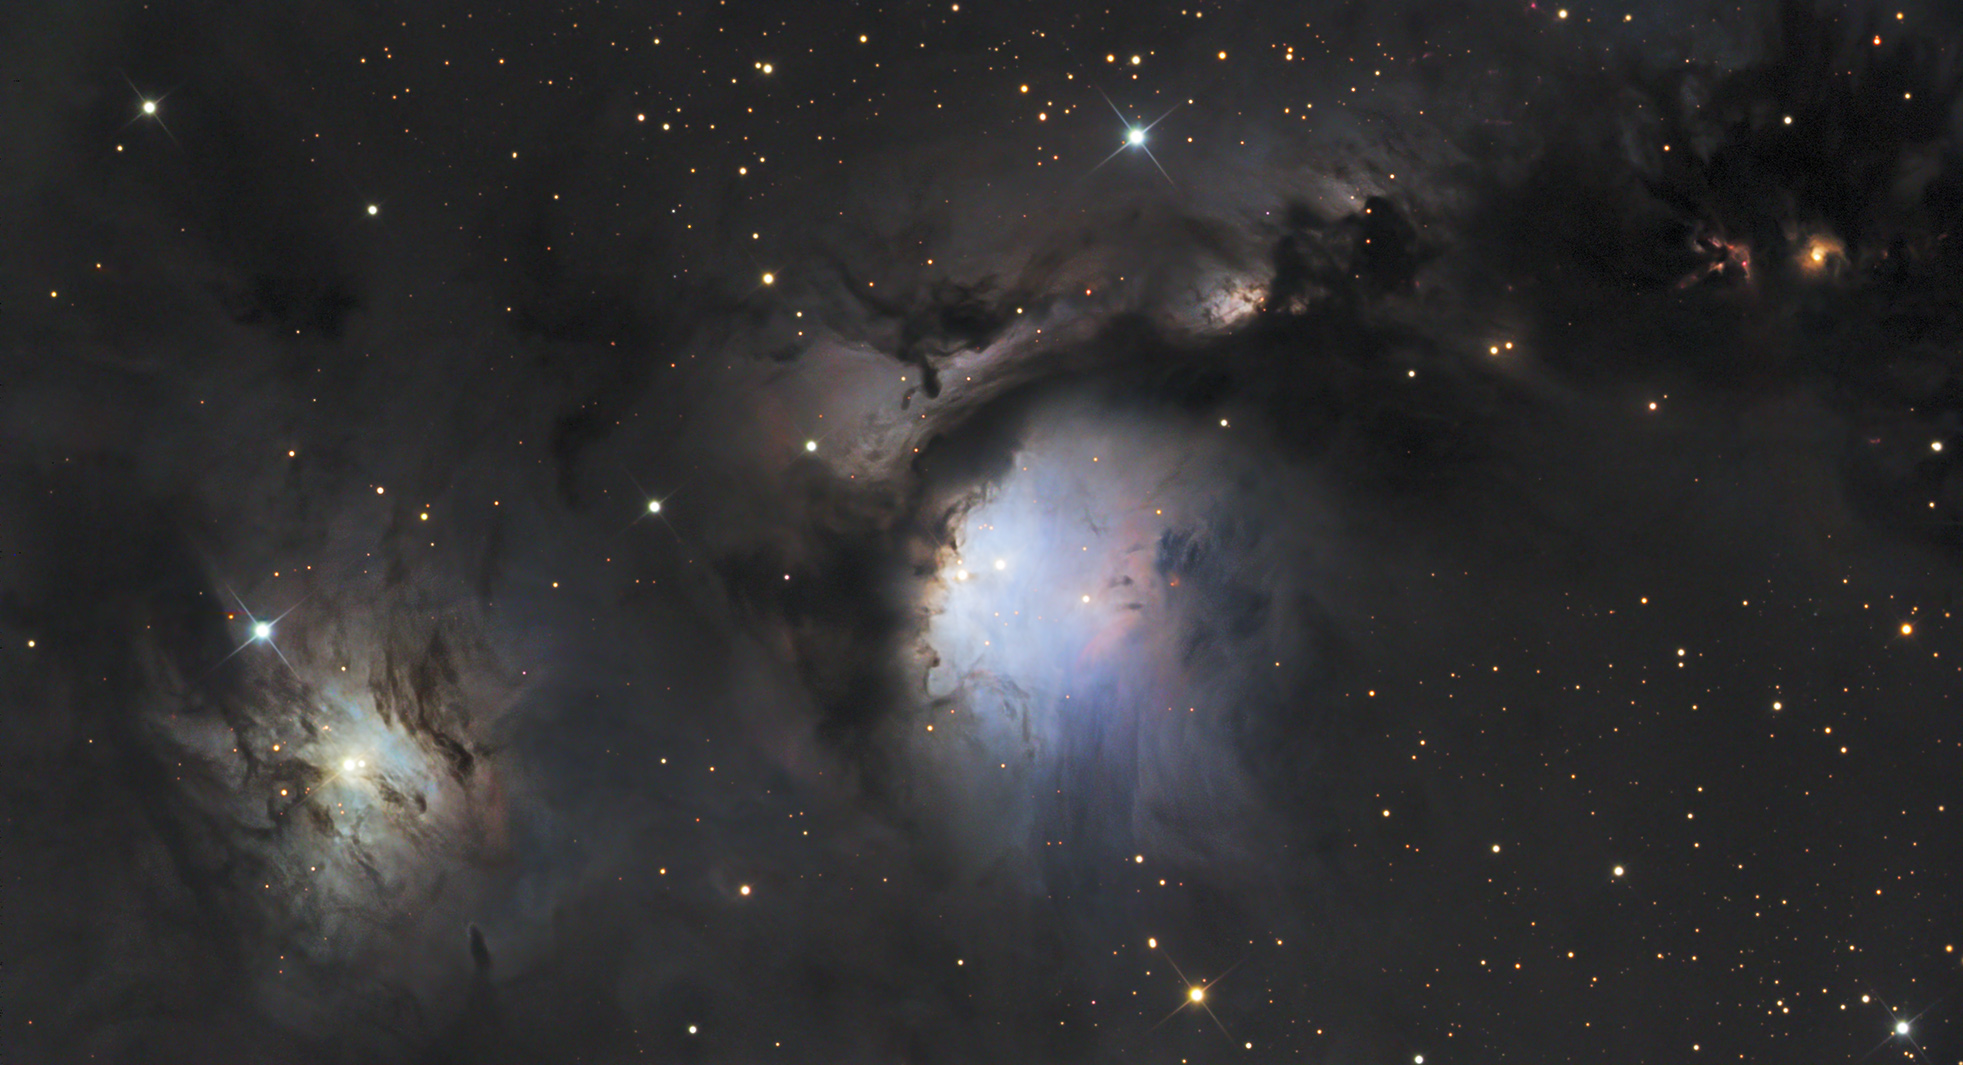 M78 et les nuages de poussière réflecteurs d’Orion